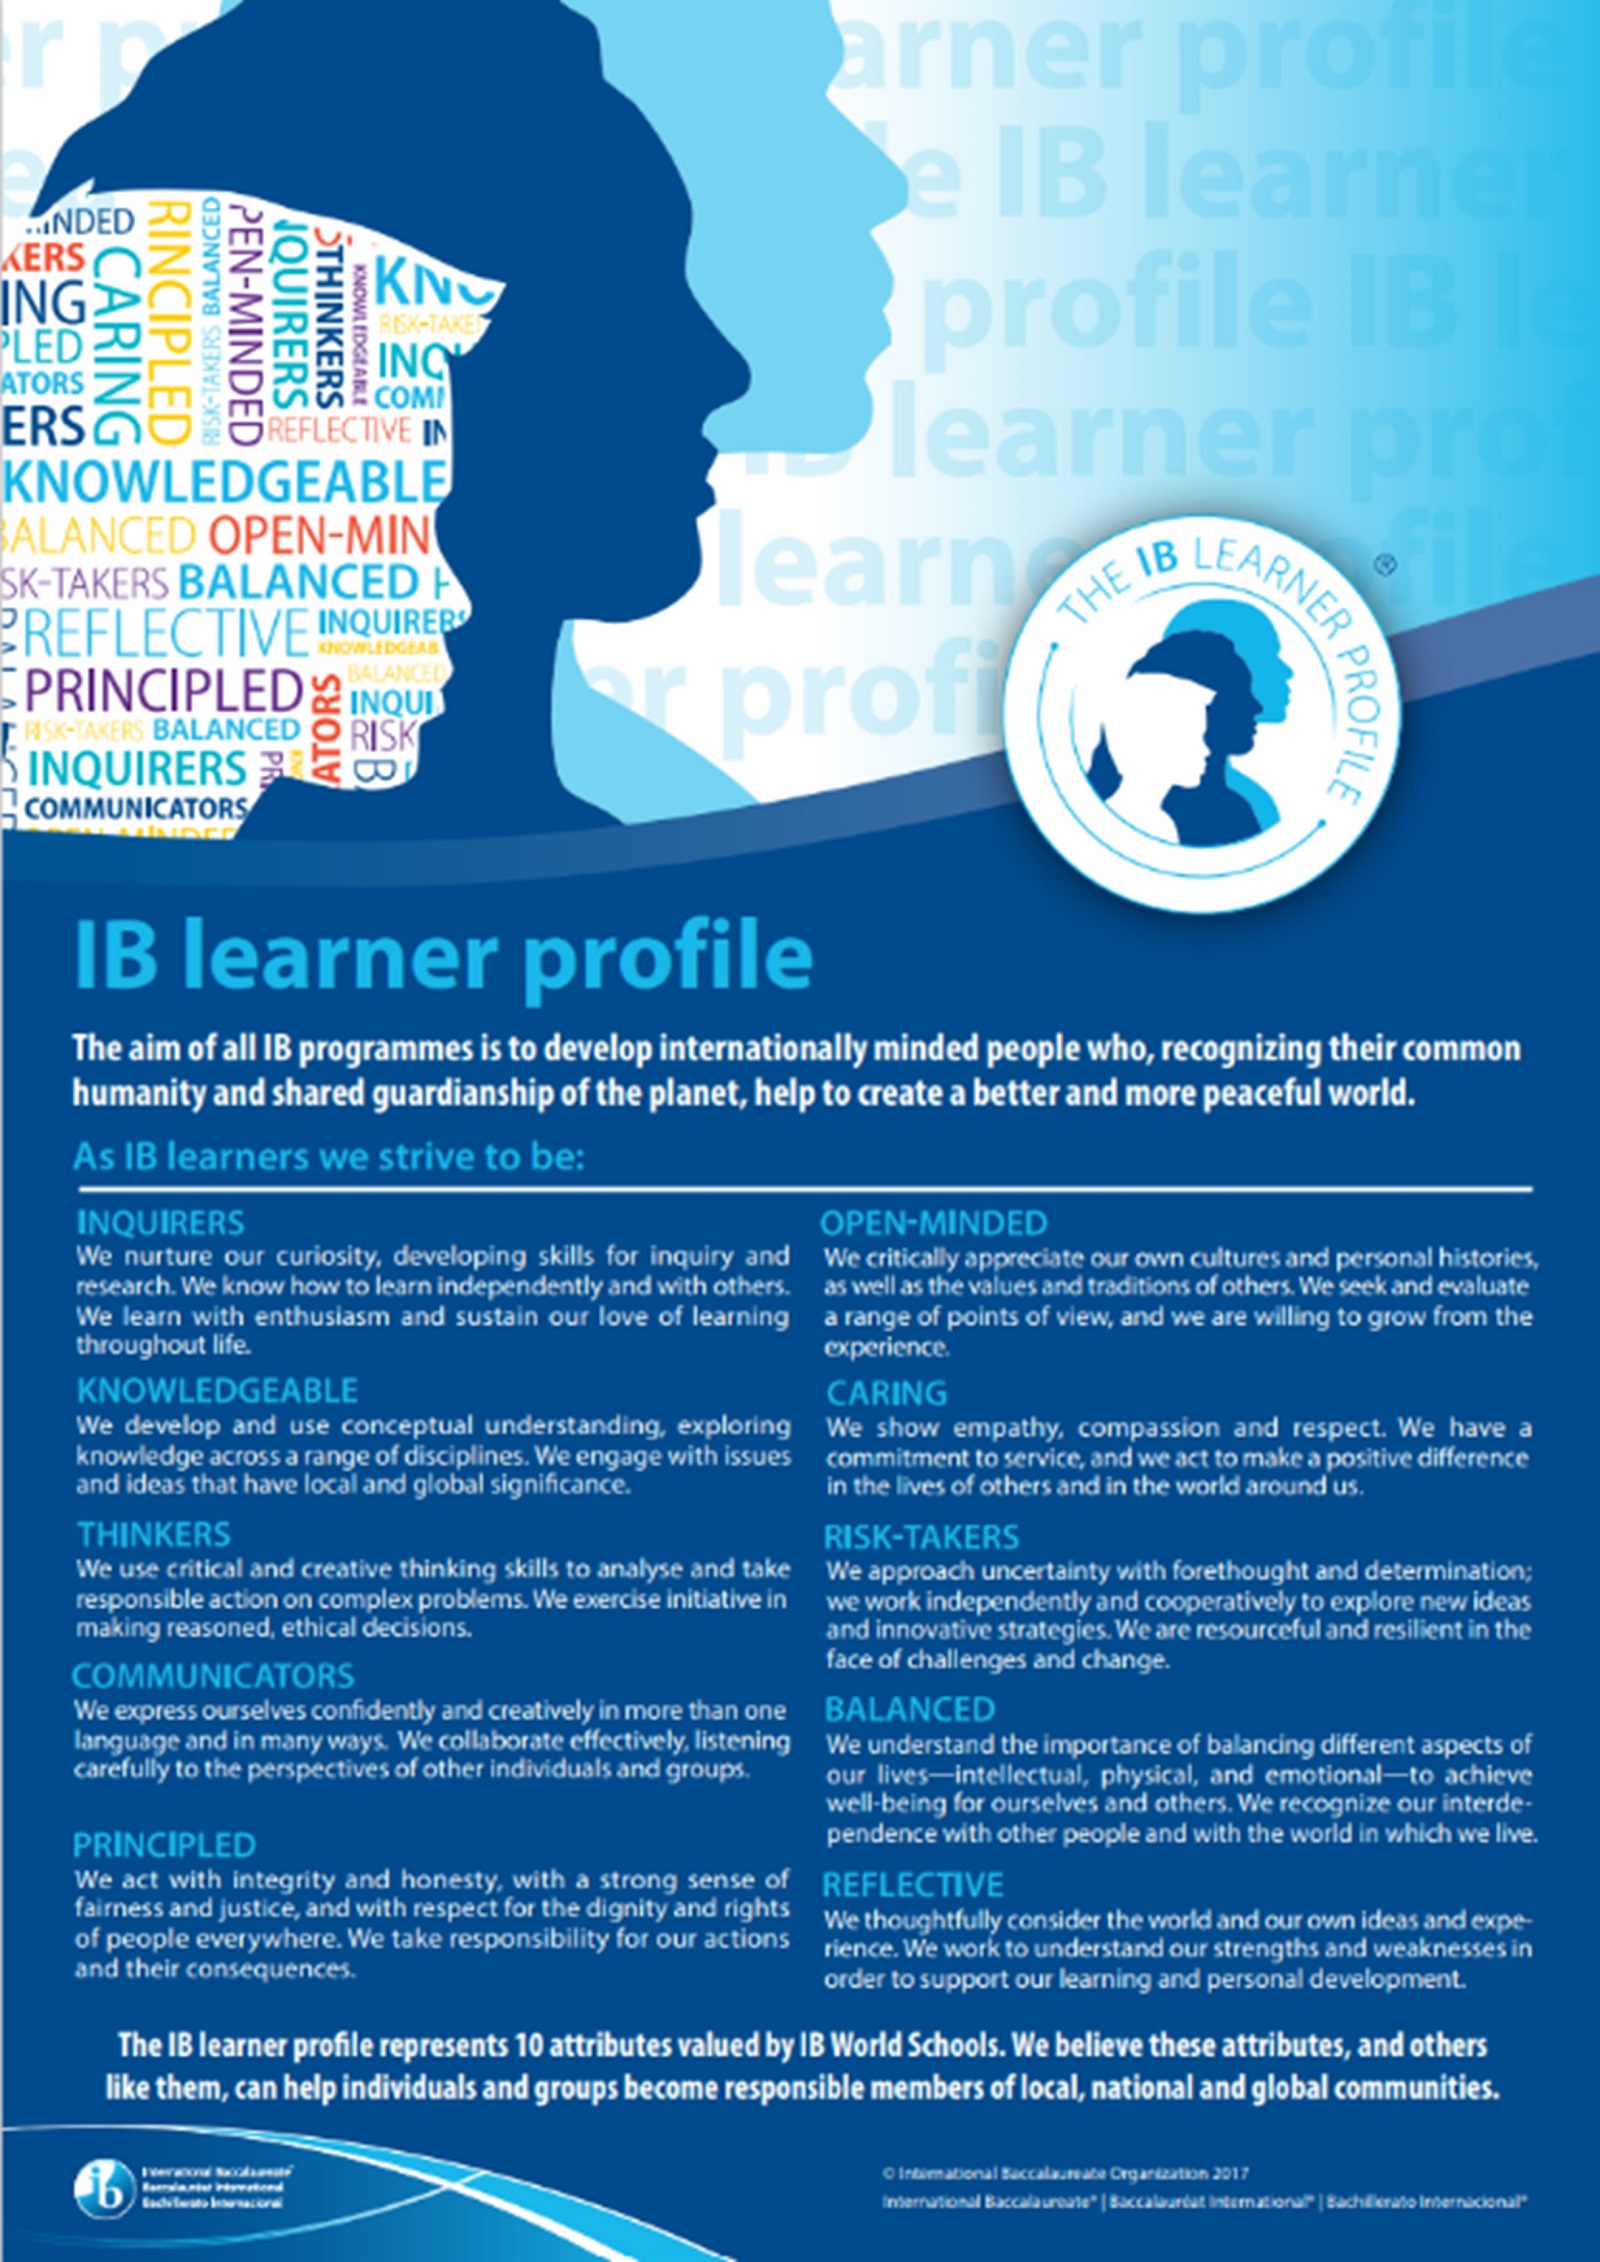 IB learner profile